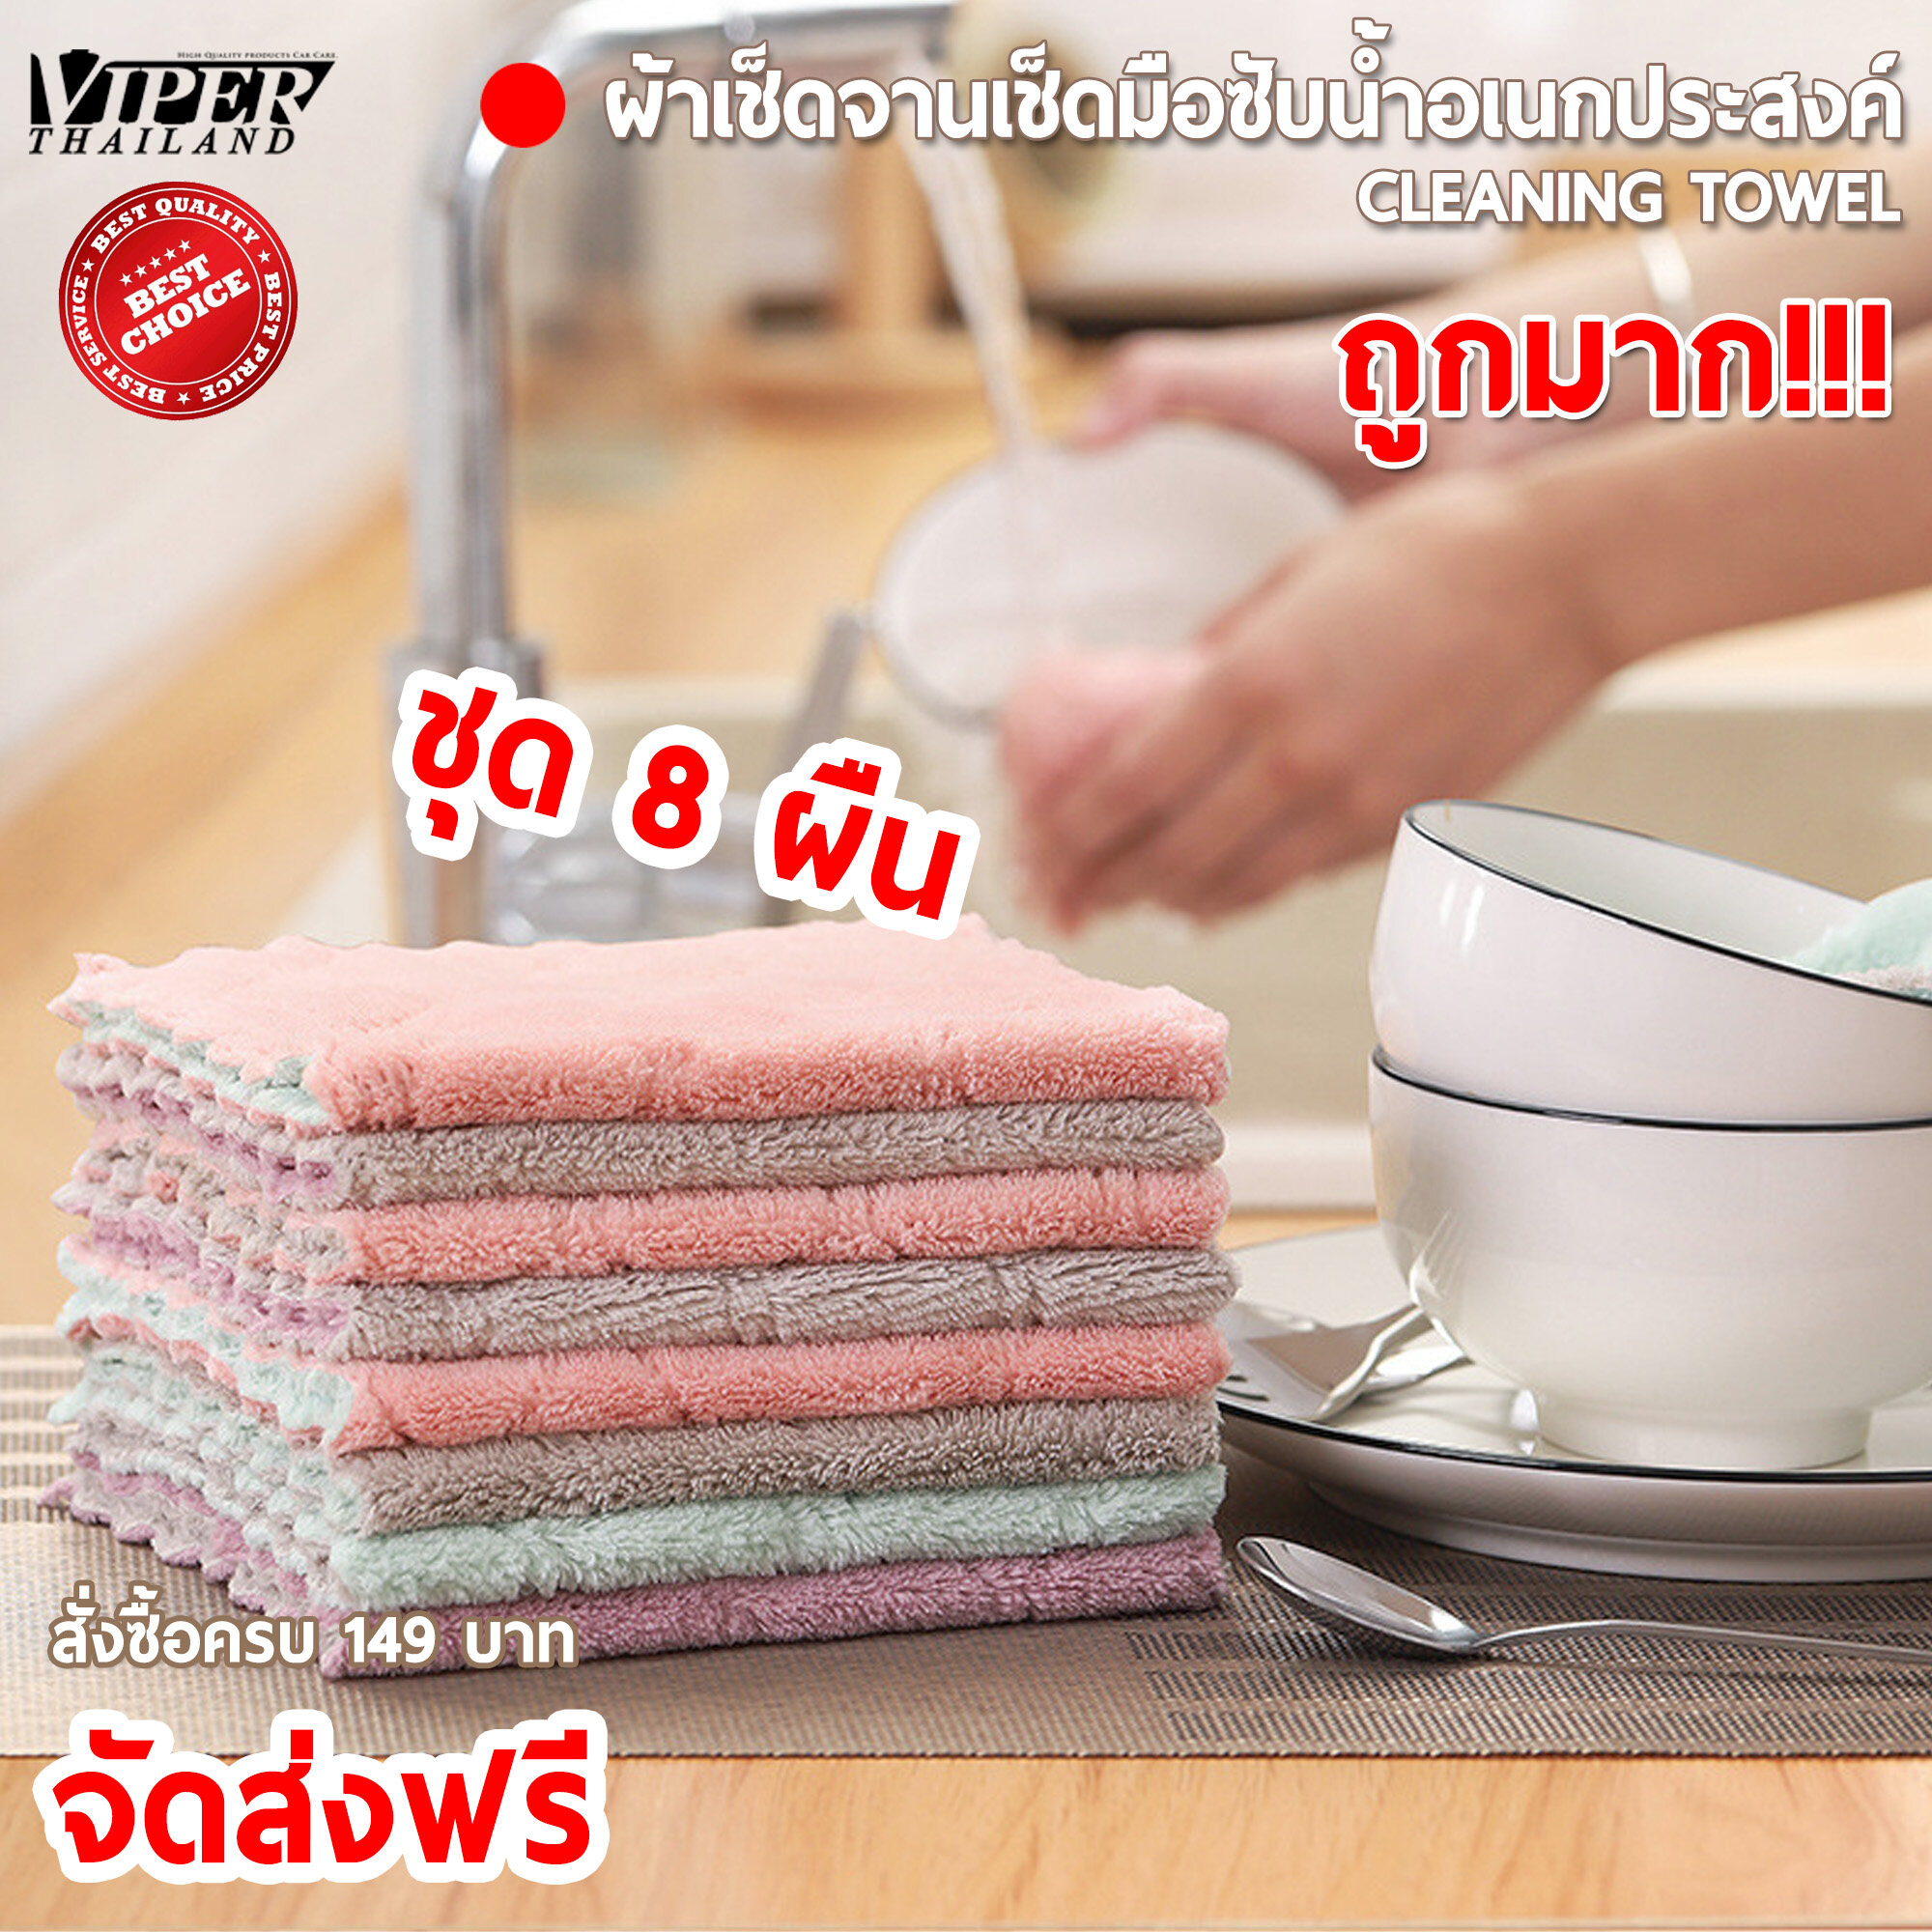 ผ้าขนแกะอเนกประสงค์ ผ้าเช็ดจานเช็ดโต๊ะ ผ้าทำความสะอาดอเนกประสงค์ 8ผืน Cleaning Cloths Viper Thailand